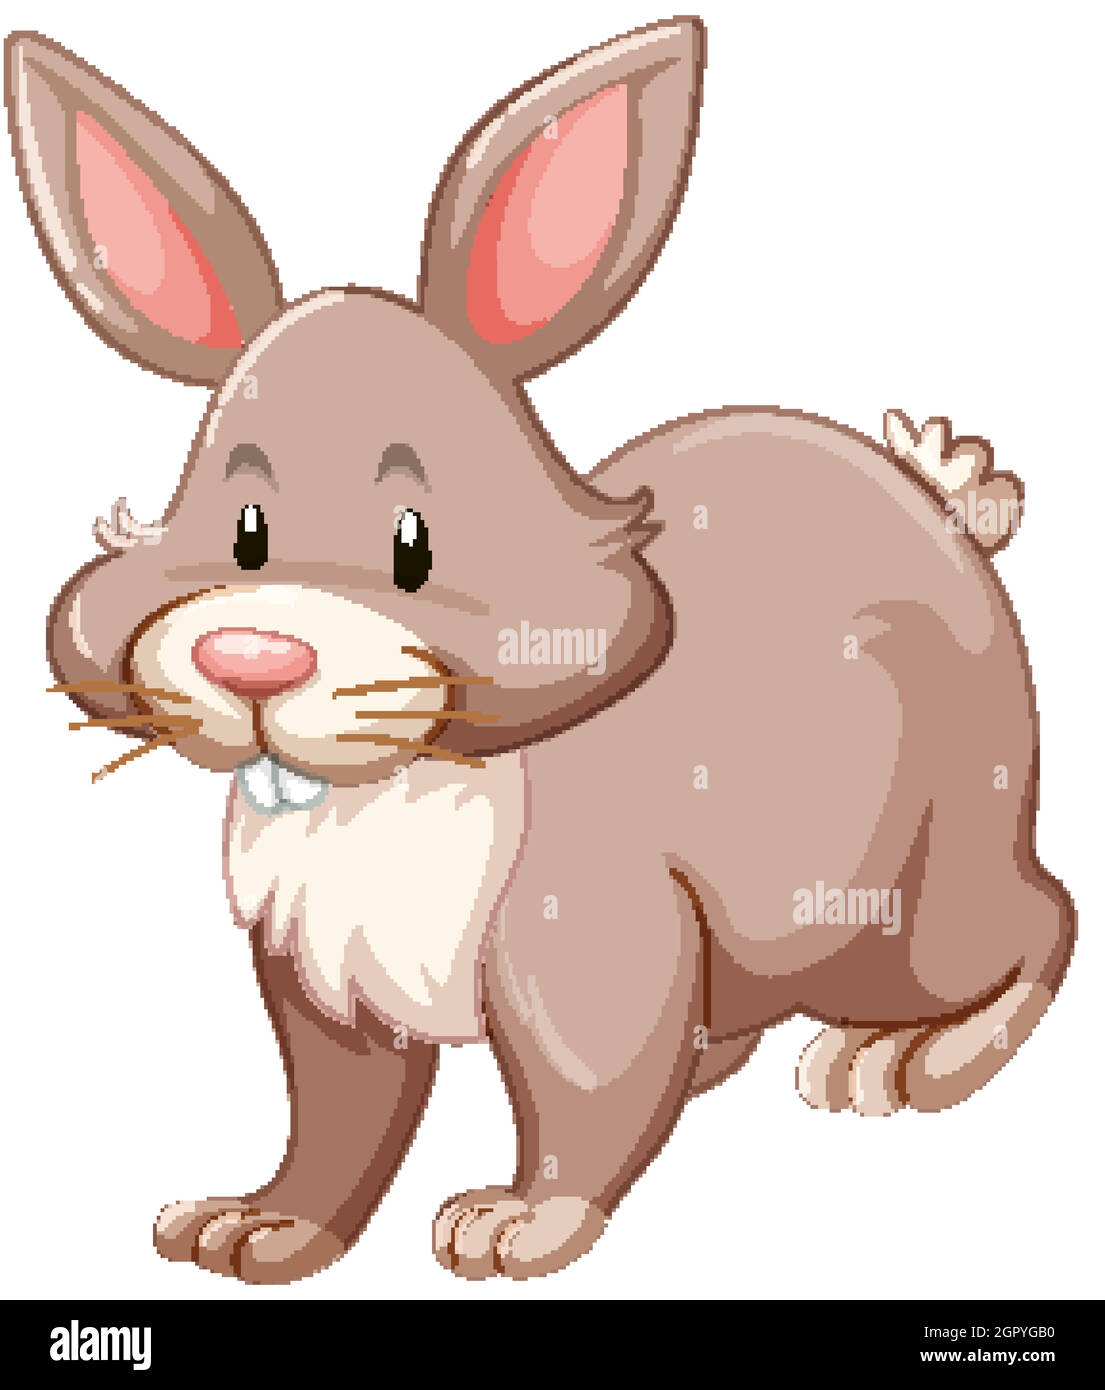 Simpatico coniglietto marrone su sfondo bianco Illustrazione Vettoriale